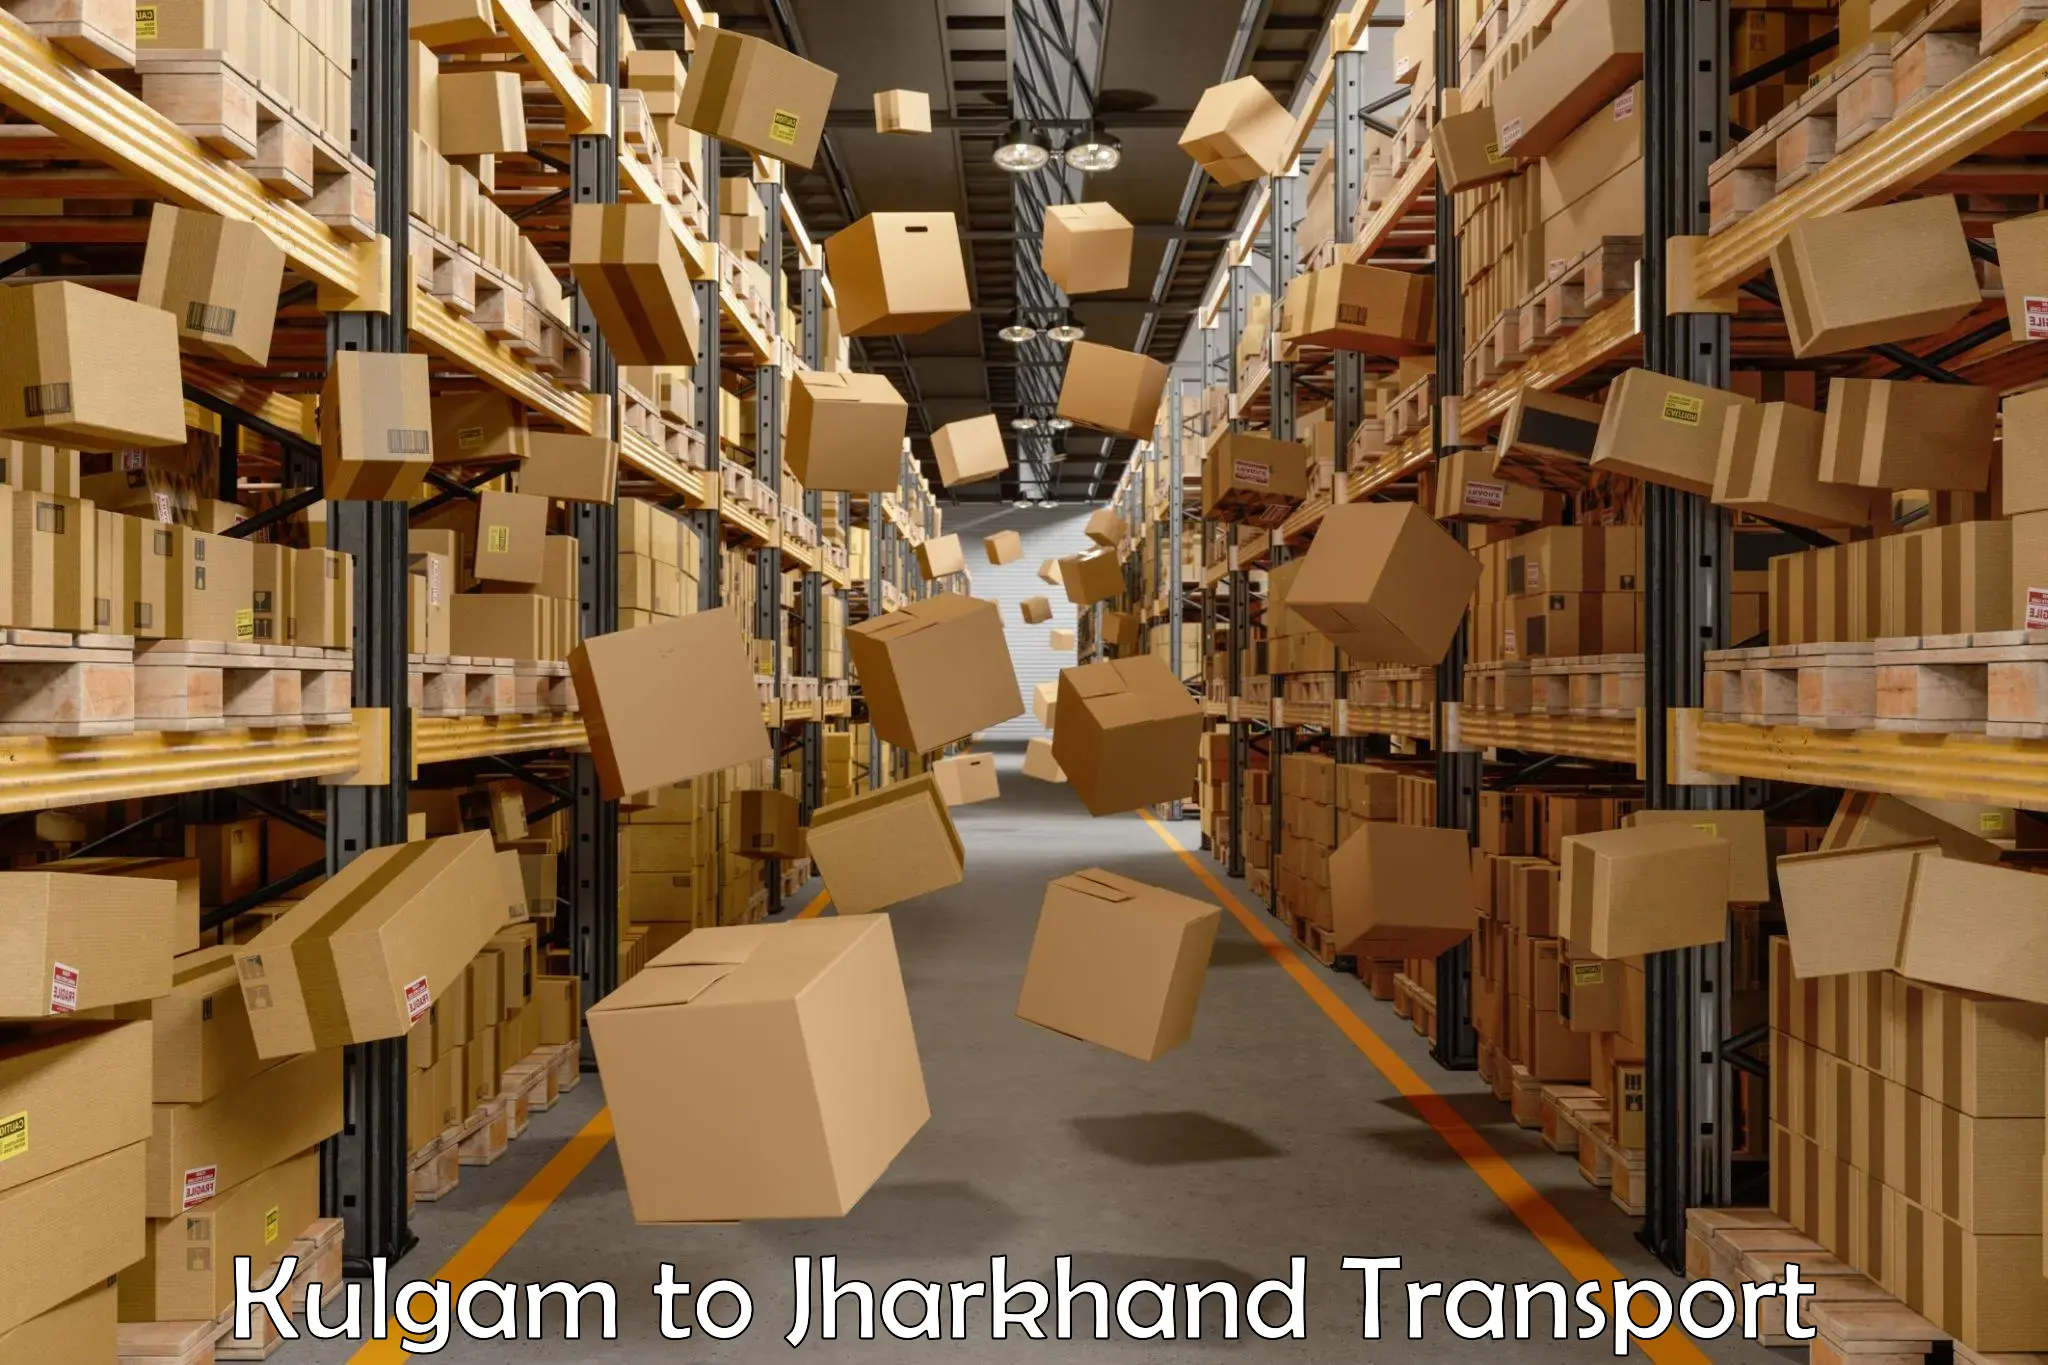 Cargo transport services Kulgam to Musabani